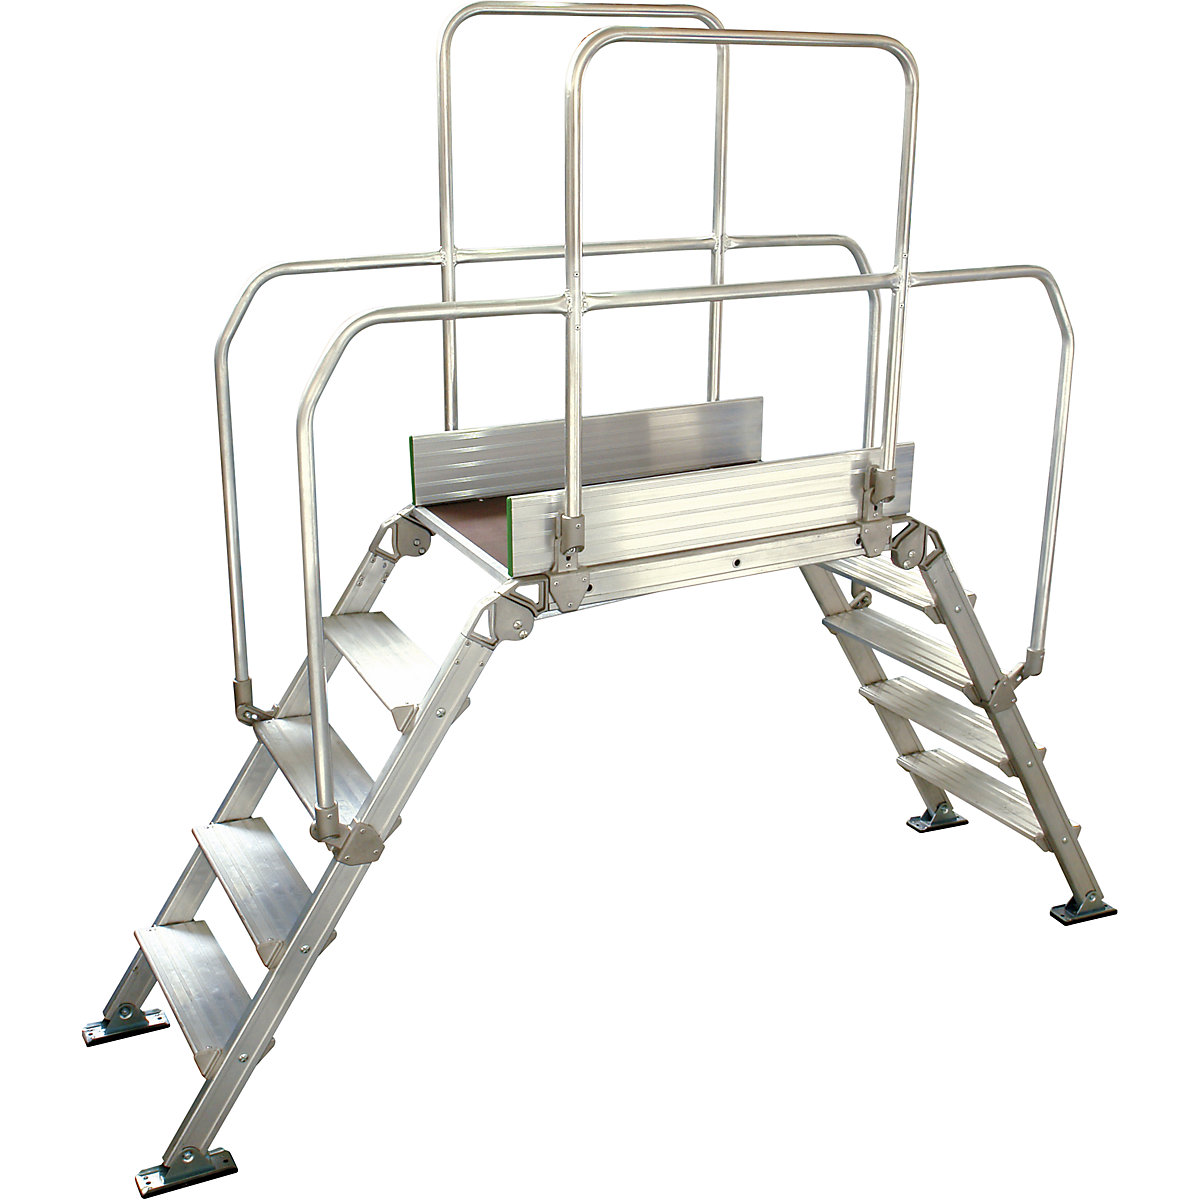 Aluminium ladderbrug, totale belasting 200 kg, 5 treden, platform 900 x 530 mm-10